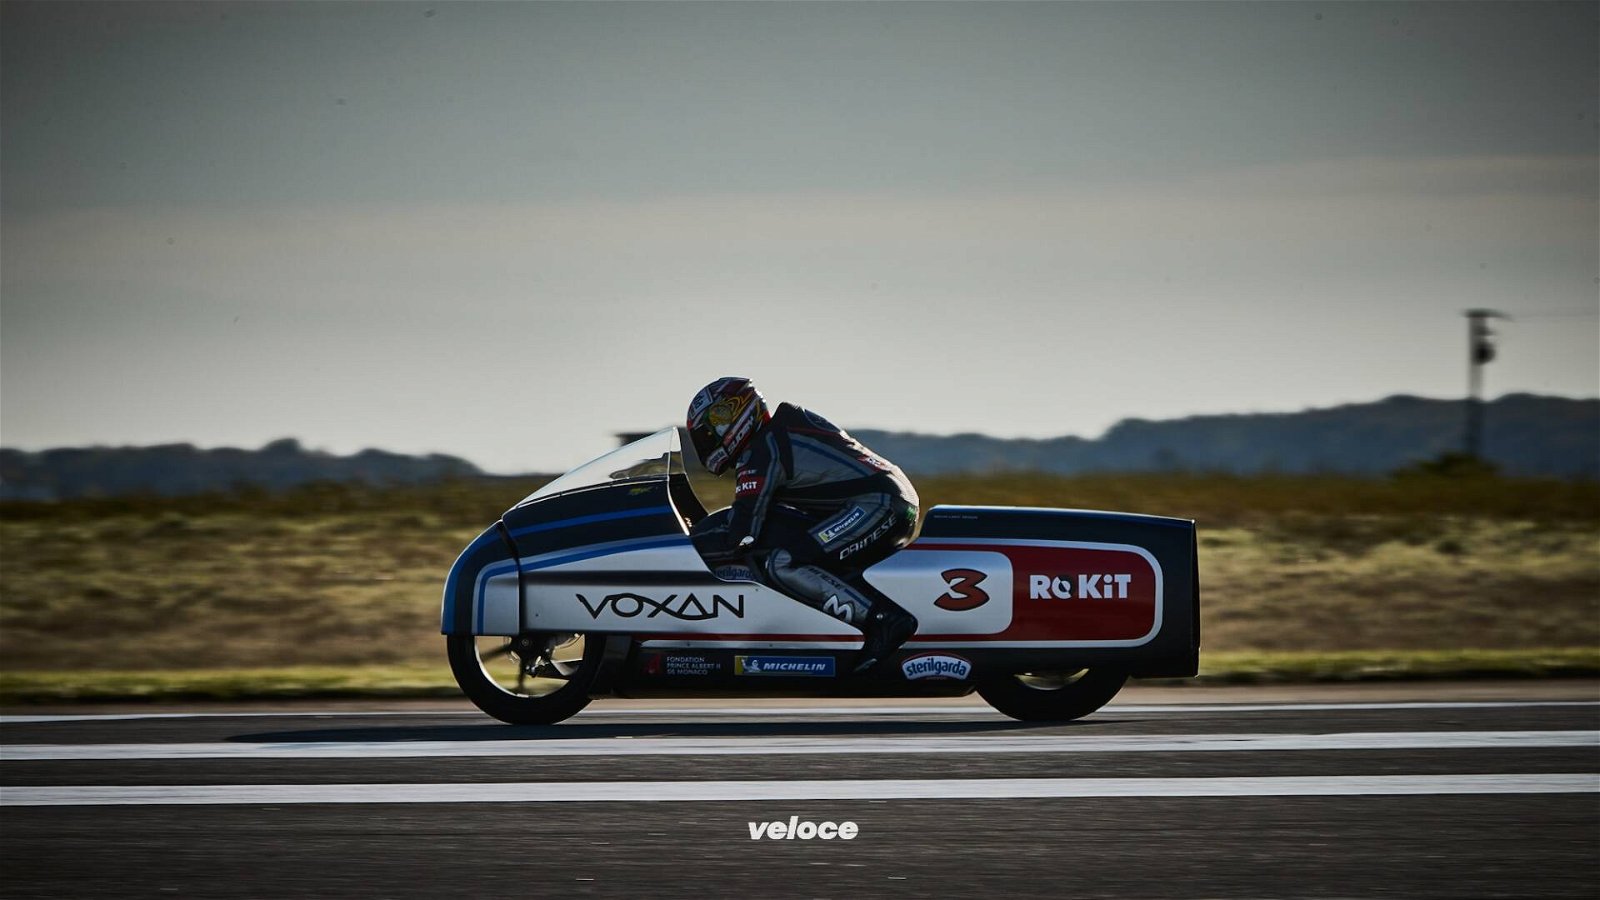 Immagine di Max Biaggi a 455 km/h in sella alla Voxan Wattman